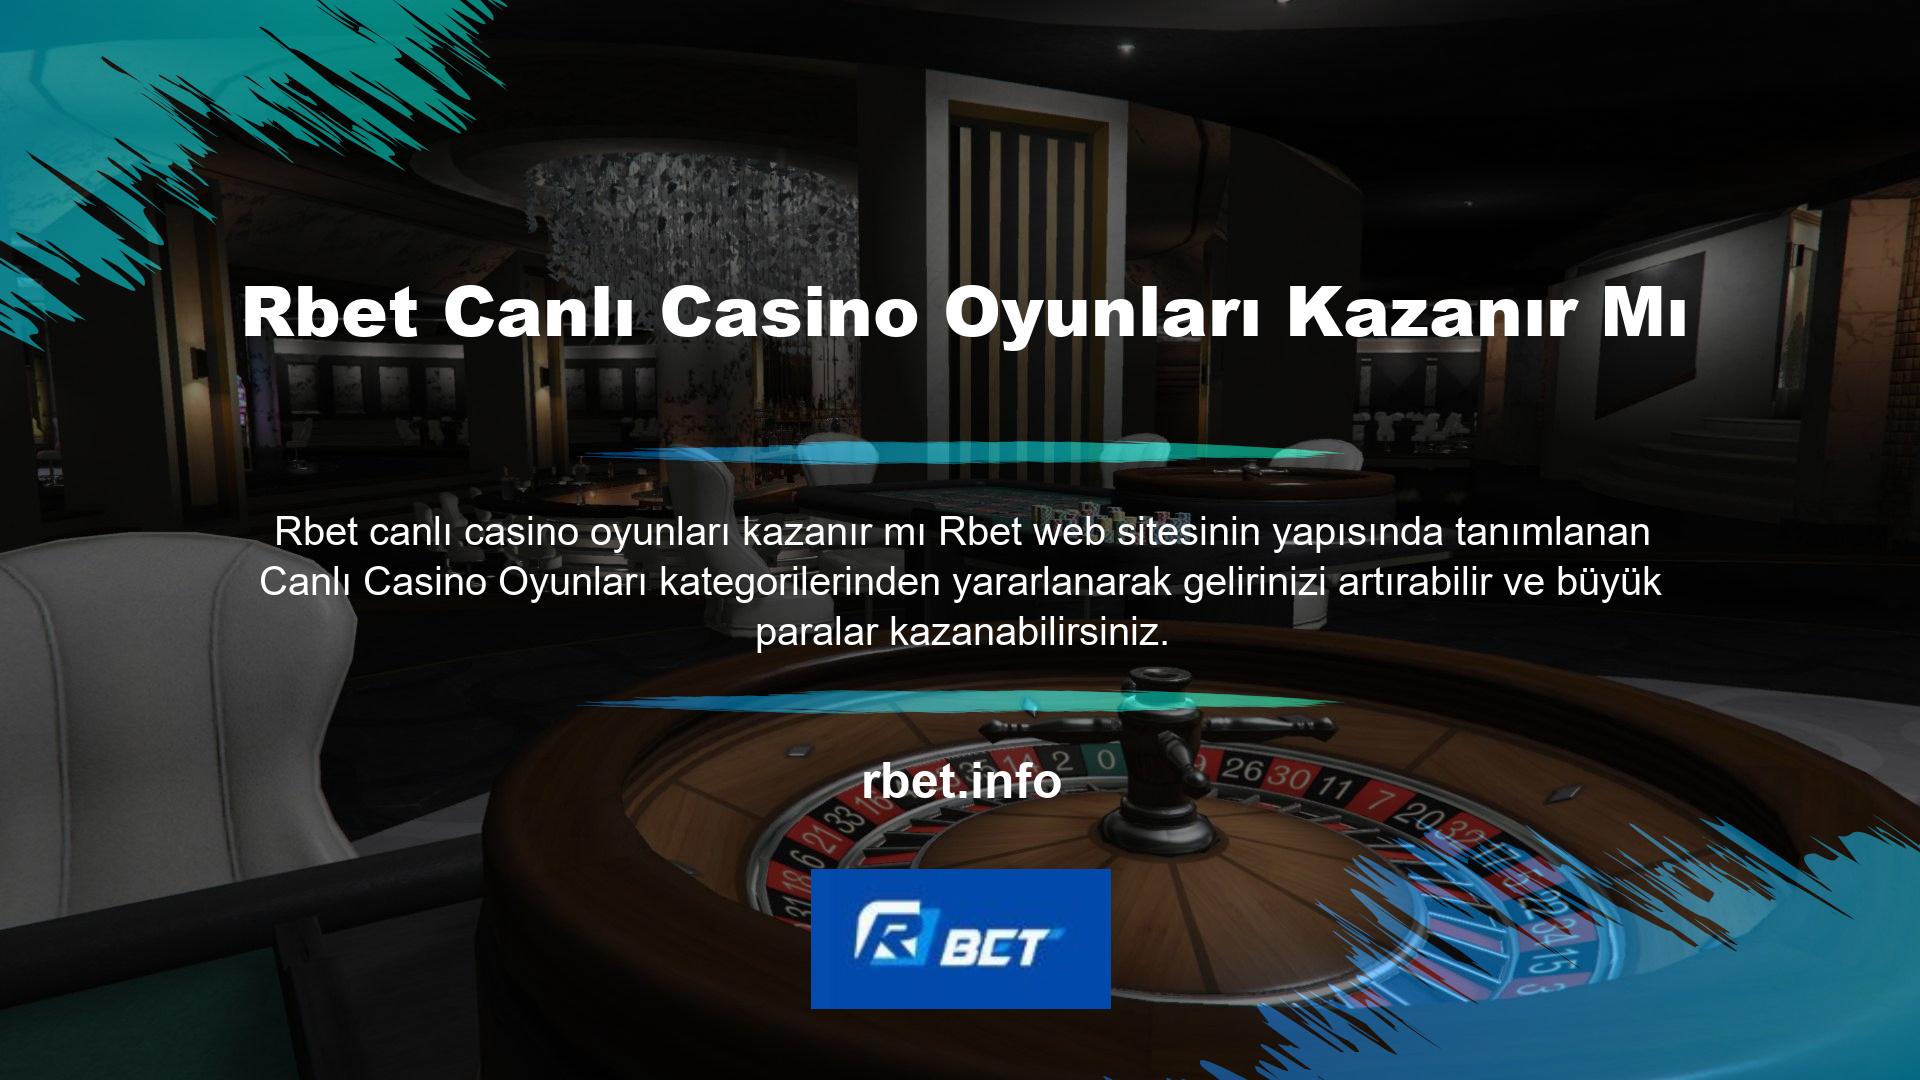 Rbet canlı casino oyun seçimi oldukça iyi bilinen ve karlı bir oyundur